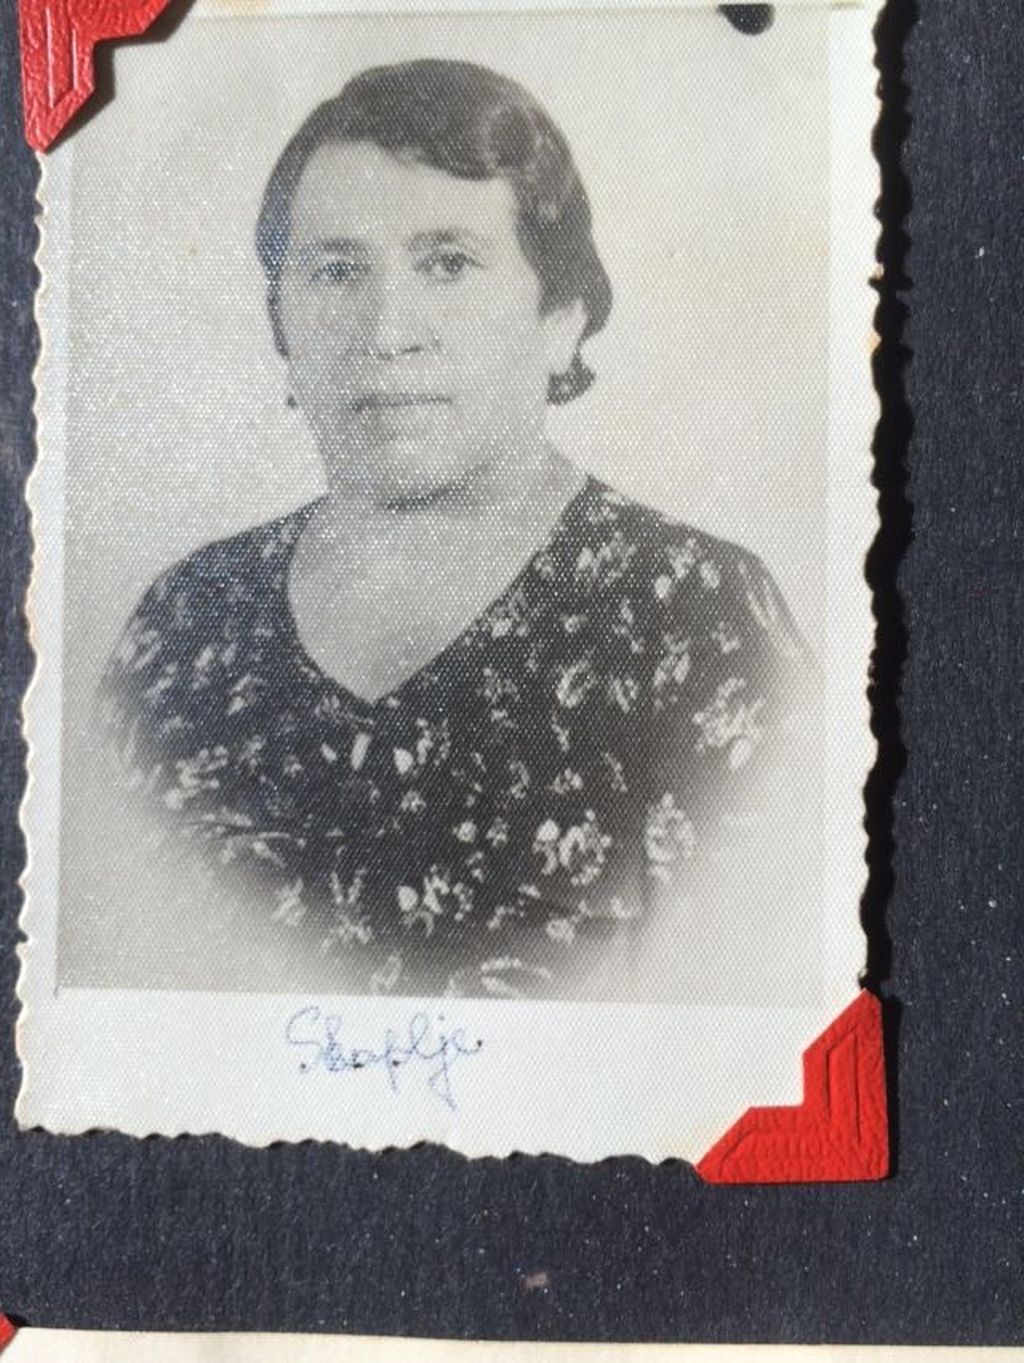 Vida Bivas de Konfori, bisabuela de Dinah,deportada a Treblinka